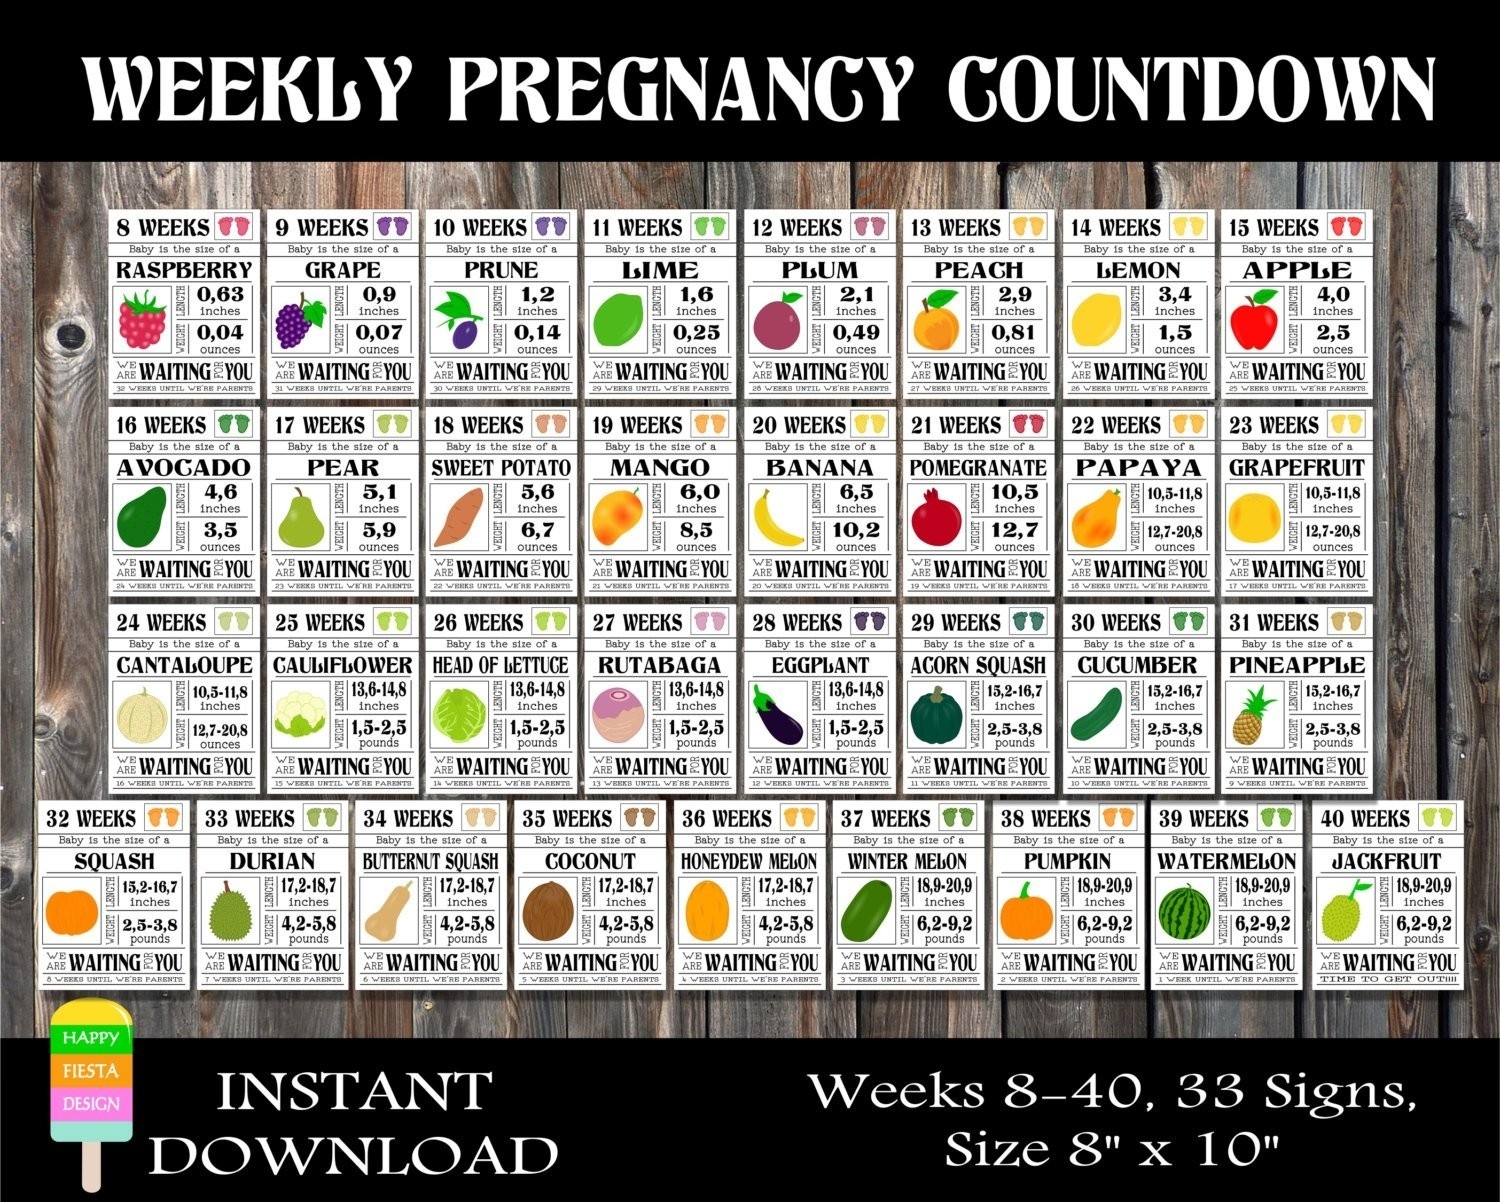 Printable Pregnancy Calendar Week By Week Printable Pregnancy Countdown Calendar In Weeks